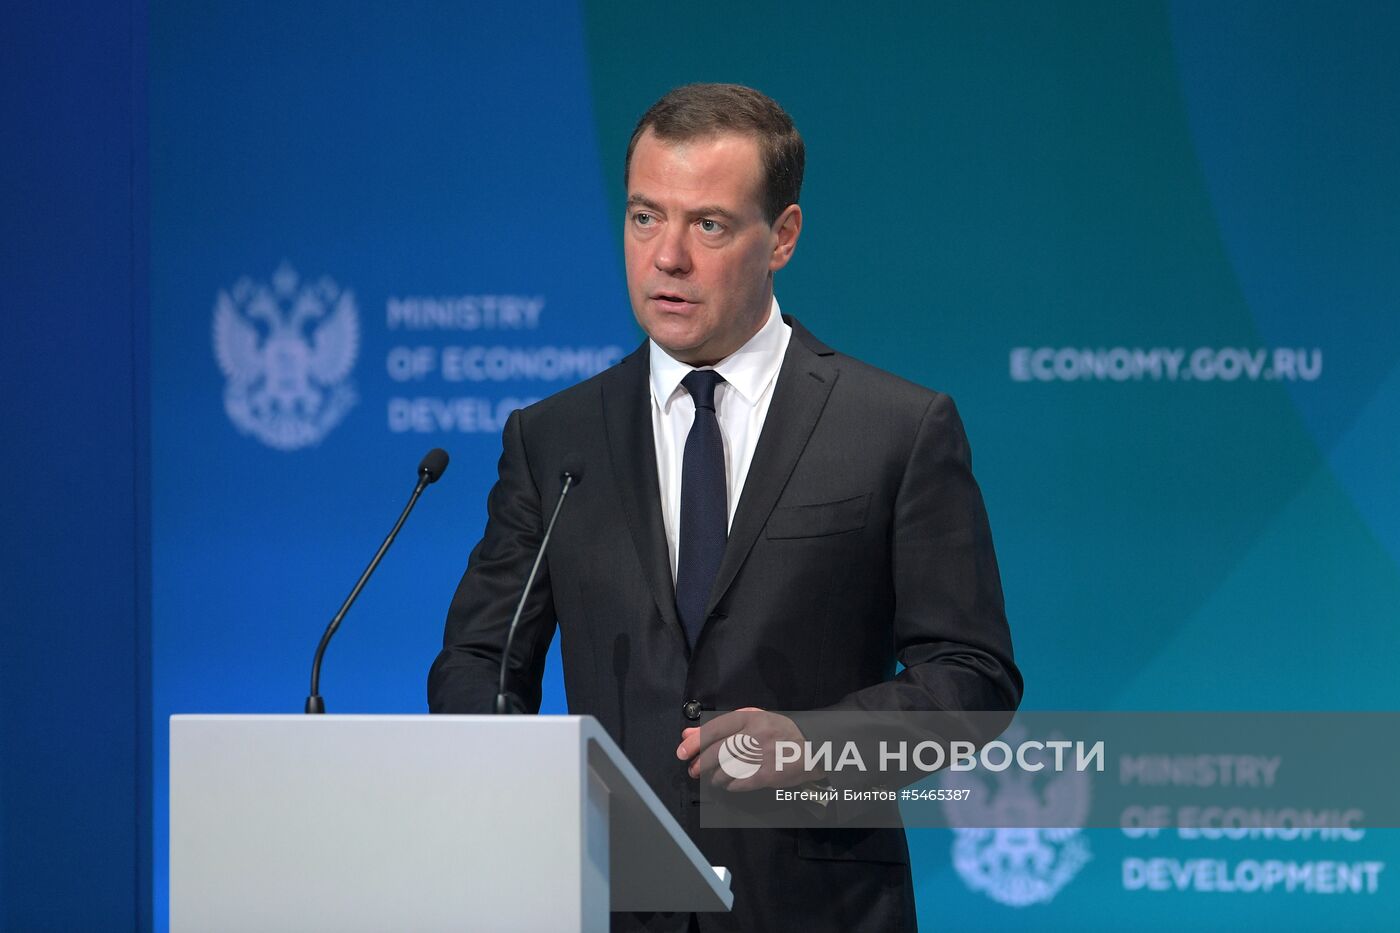 Премьер-министр Д. Медведев принял участие в расширенном заседании коллегии министерства экономического развития РФ 